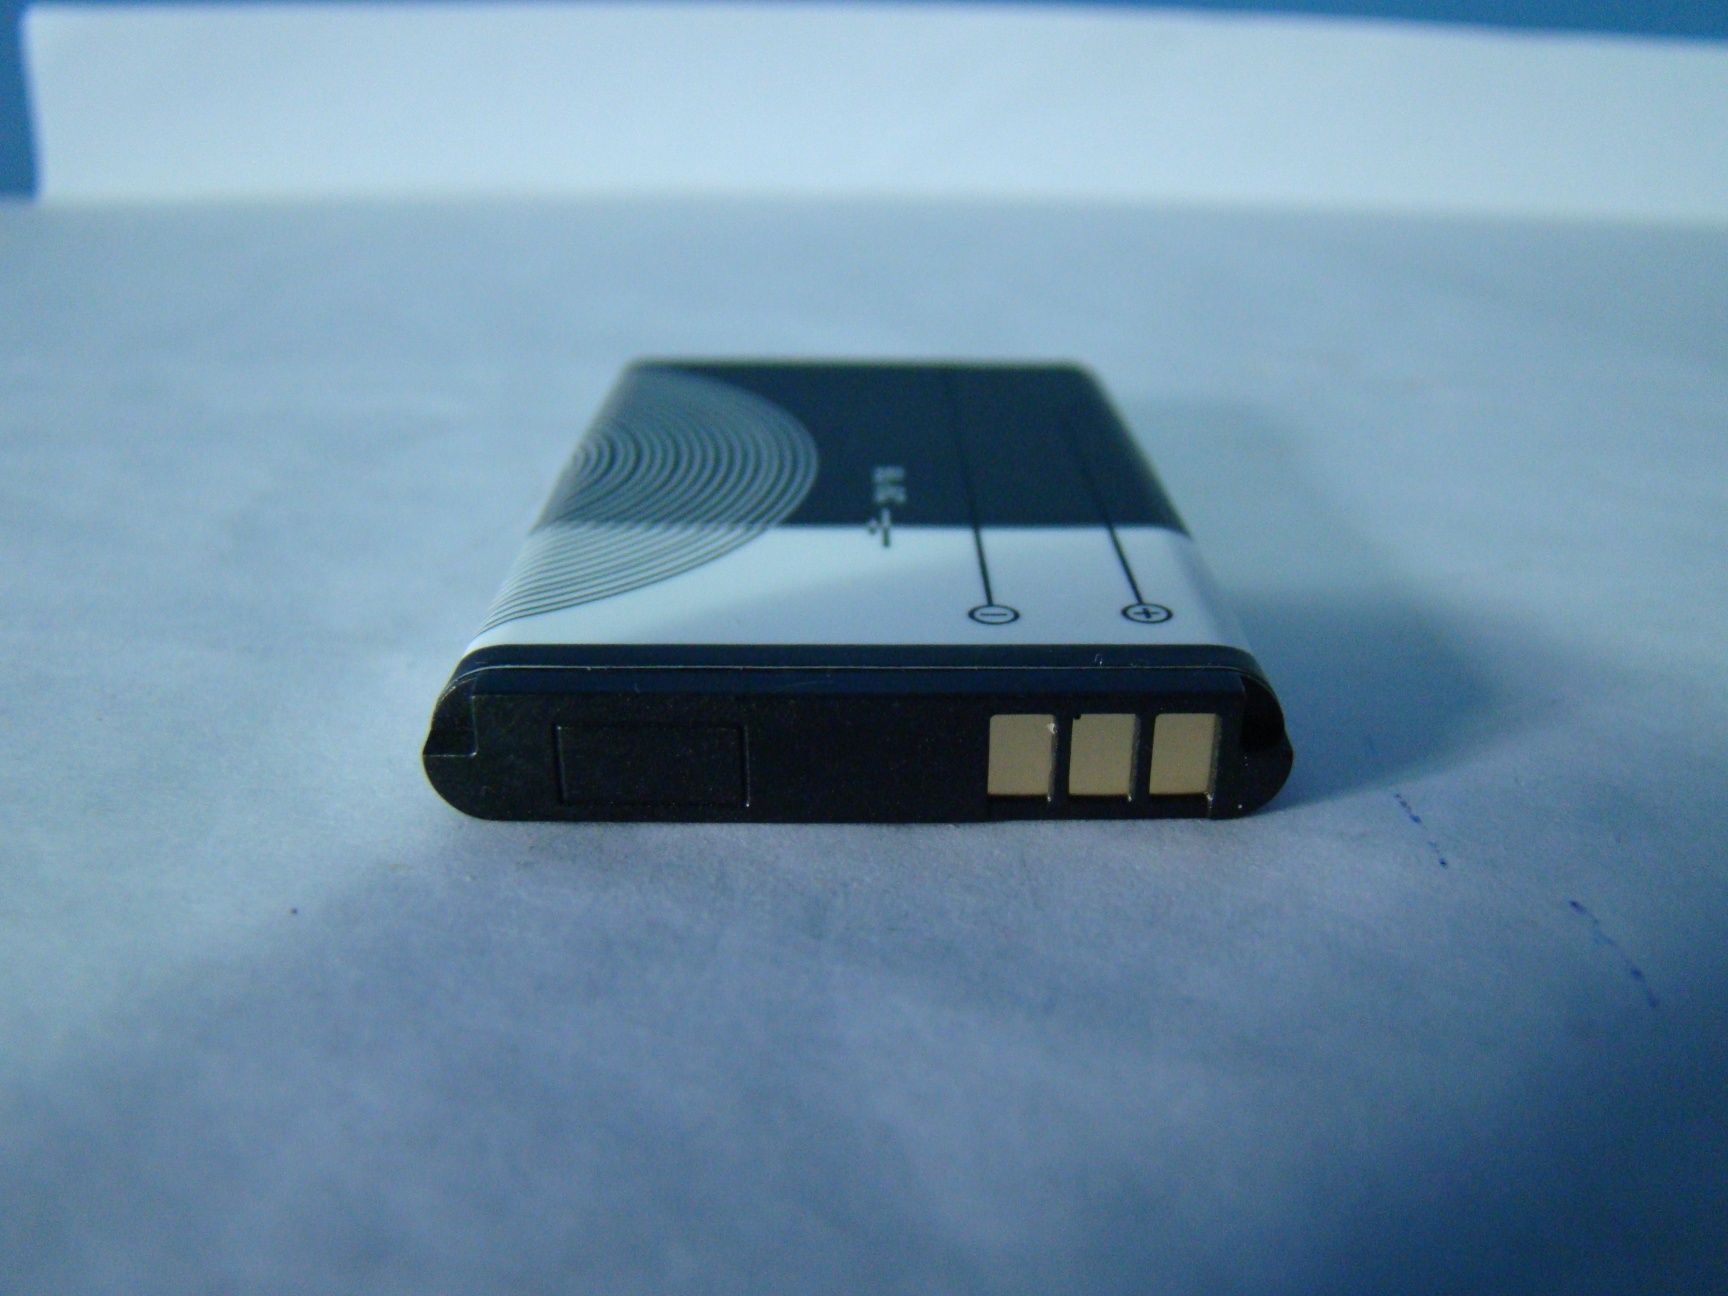 Acumulator Li-ion BL-5C pentru telefon Nokia.